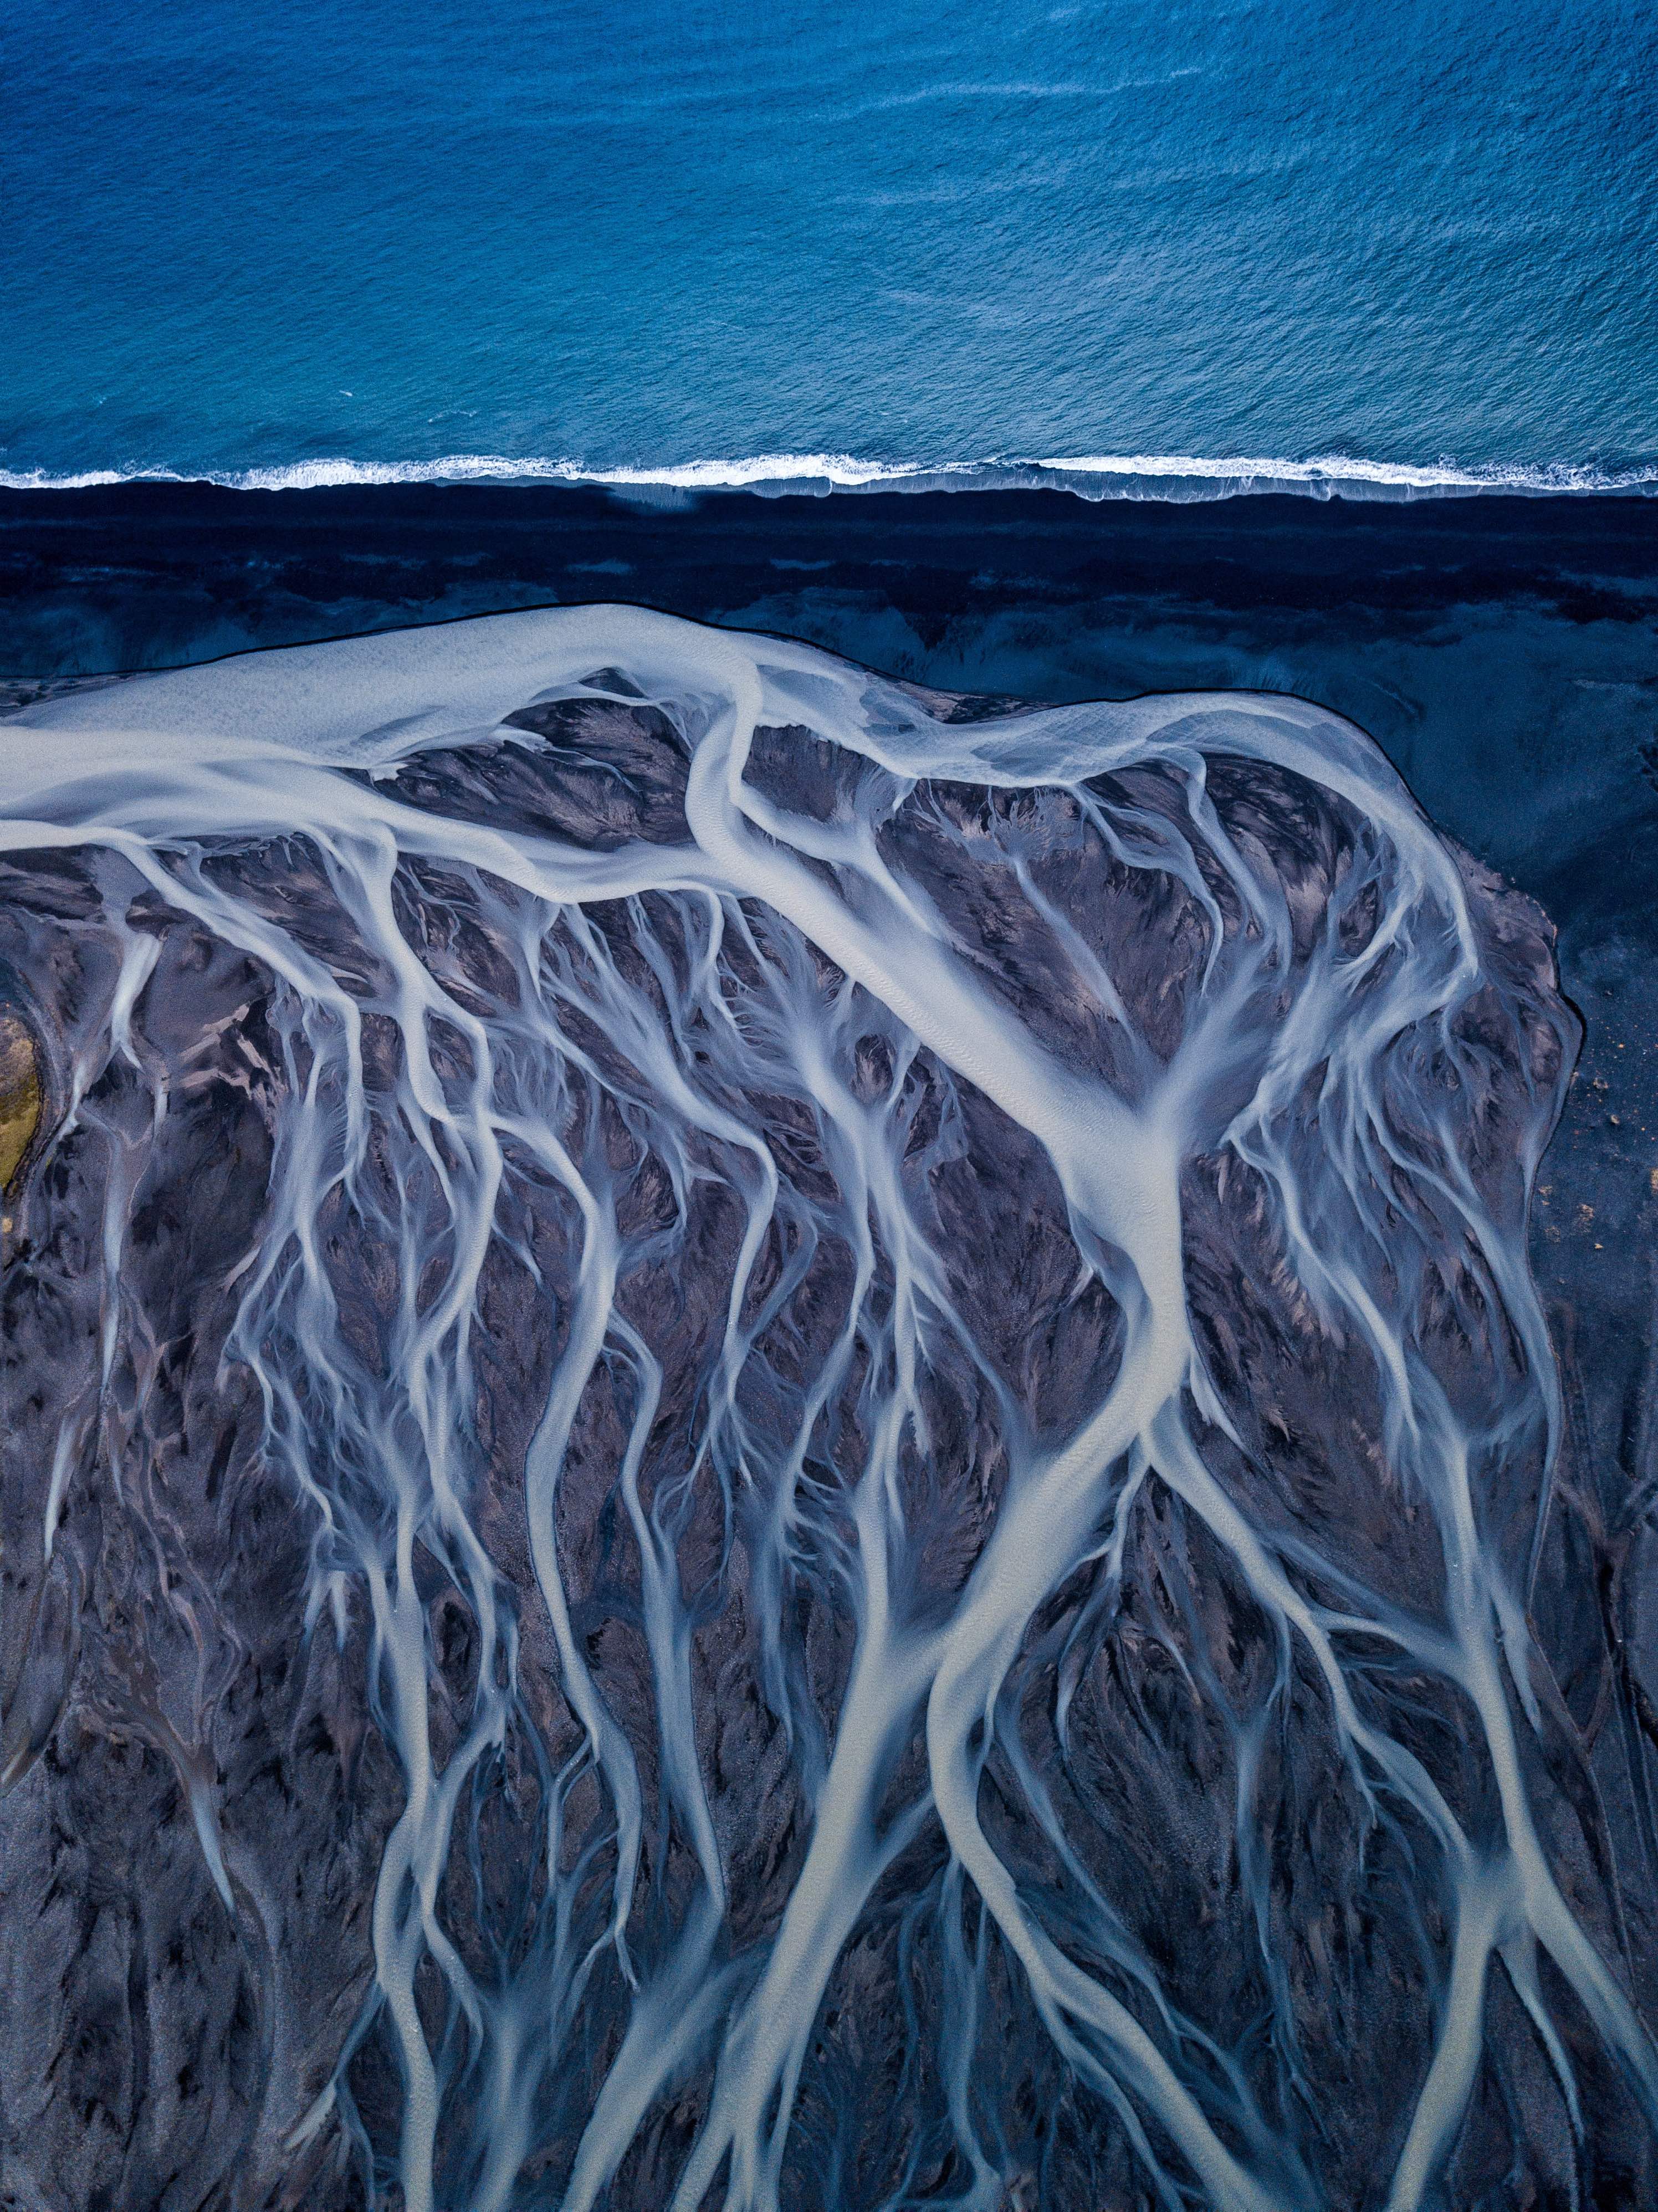 Sungai glasial mengaliri pasir hitam menuju Atlantik